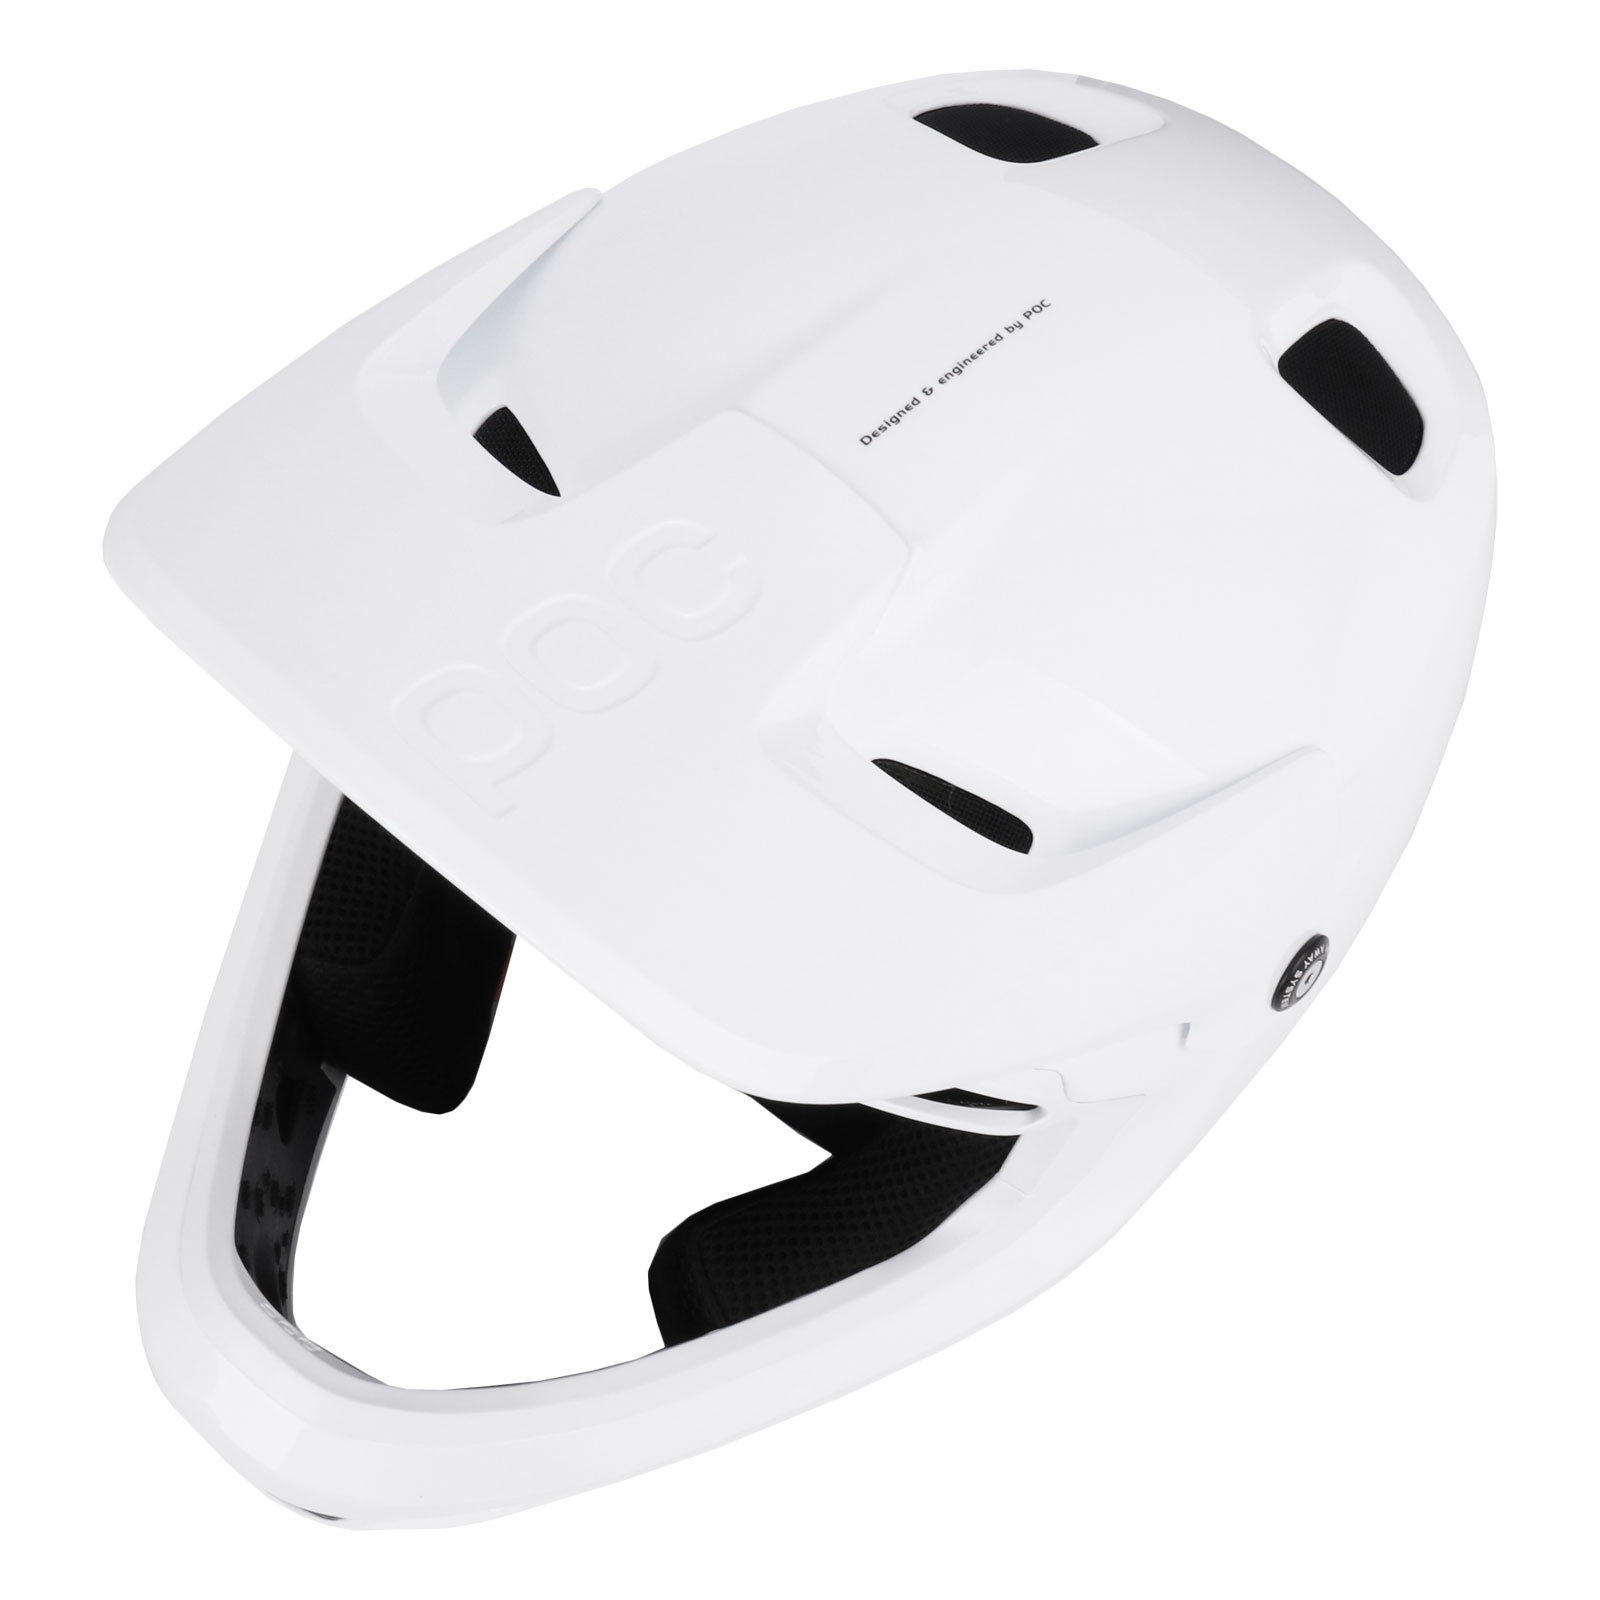 Poc Coron Air Mips - casco MTB